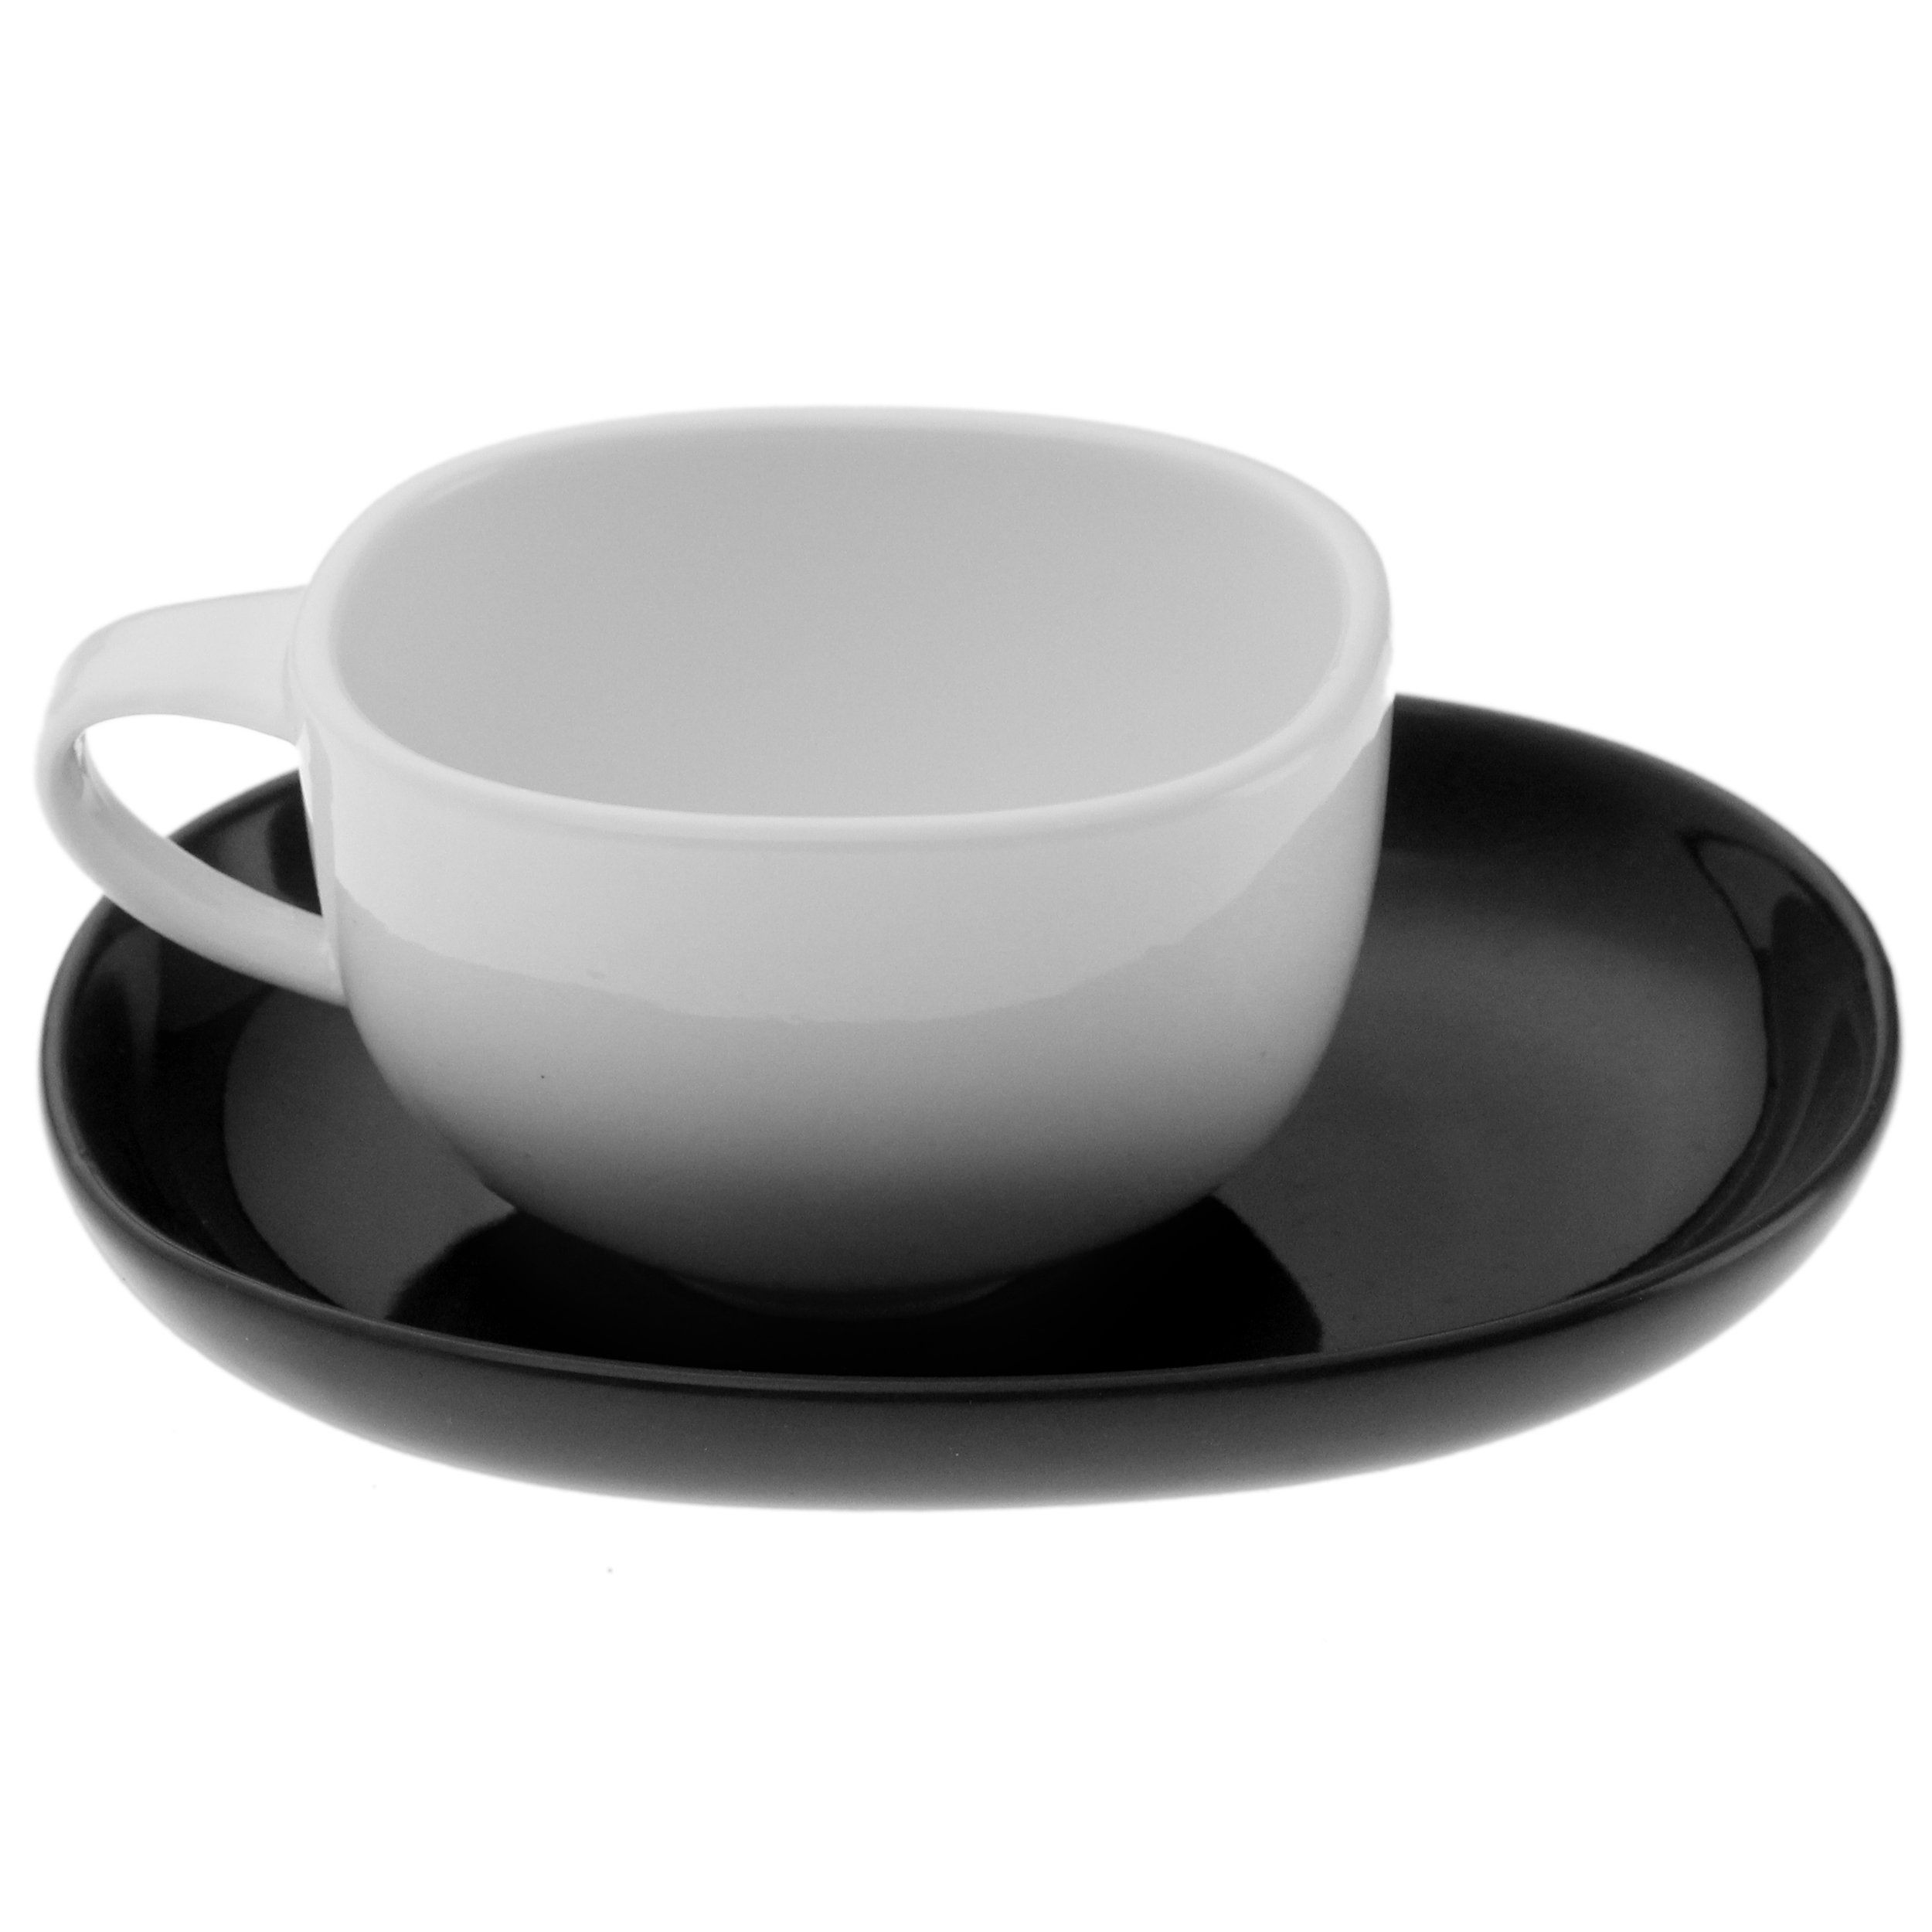 سرویس قهوه خوری 12 پارچه وان کافی مدل بارکا کالر کد JX002-230-C